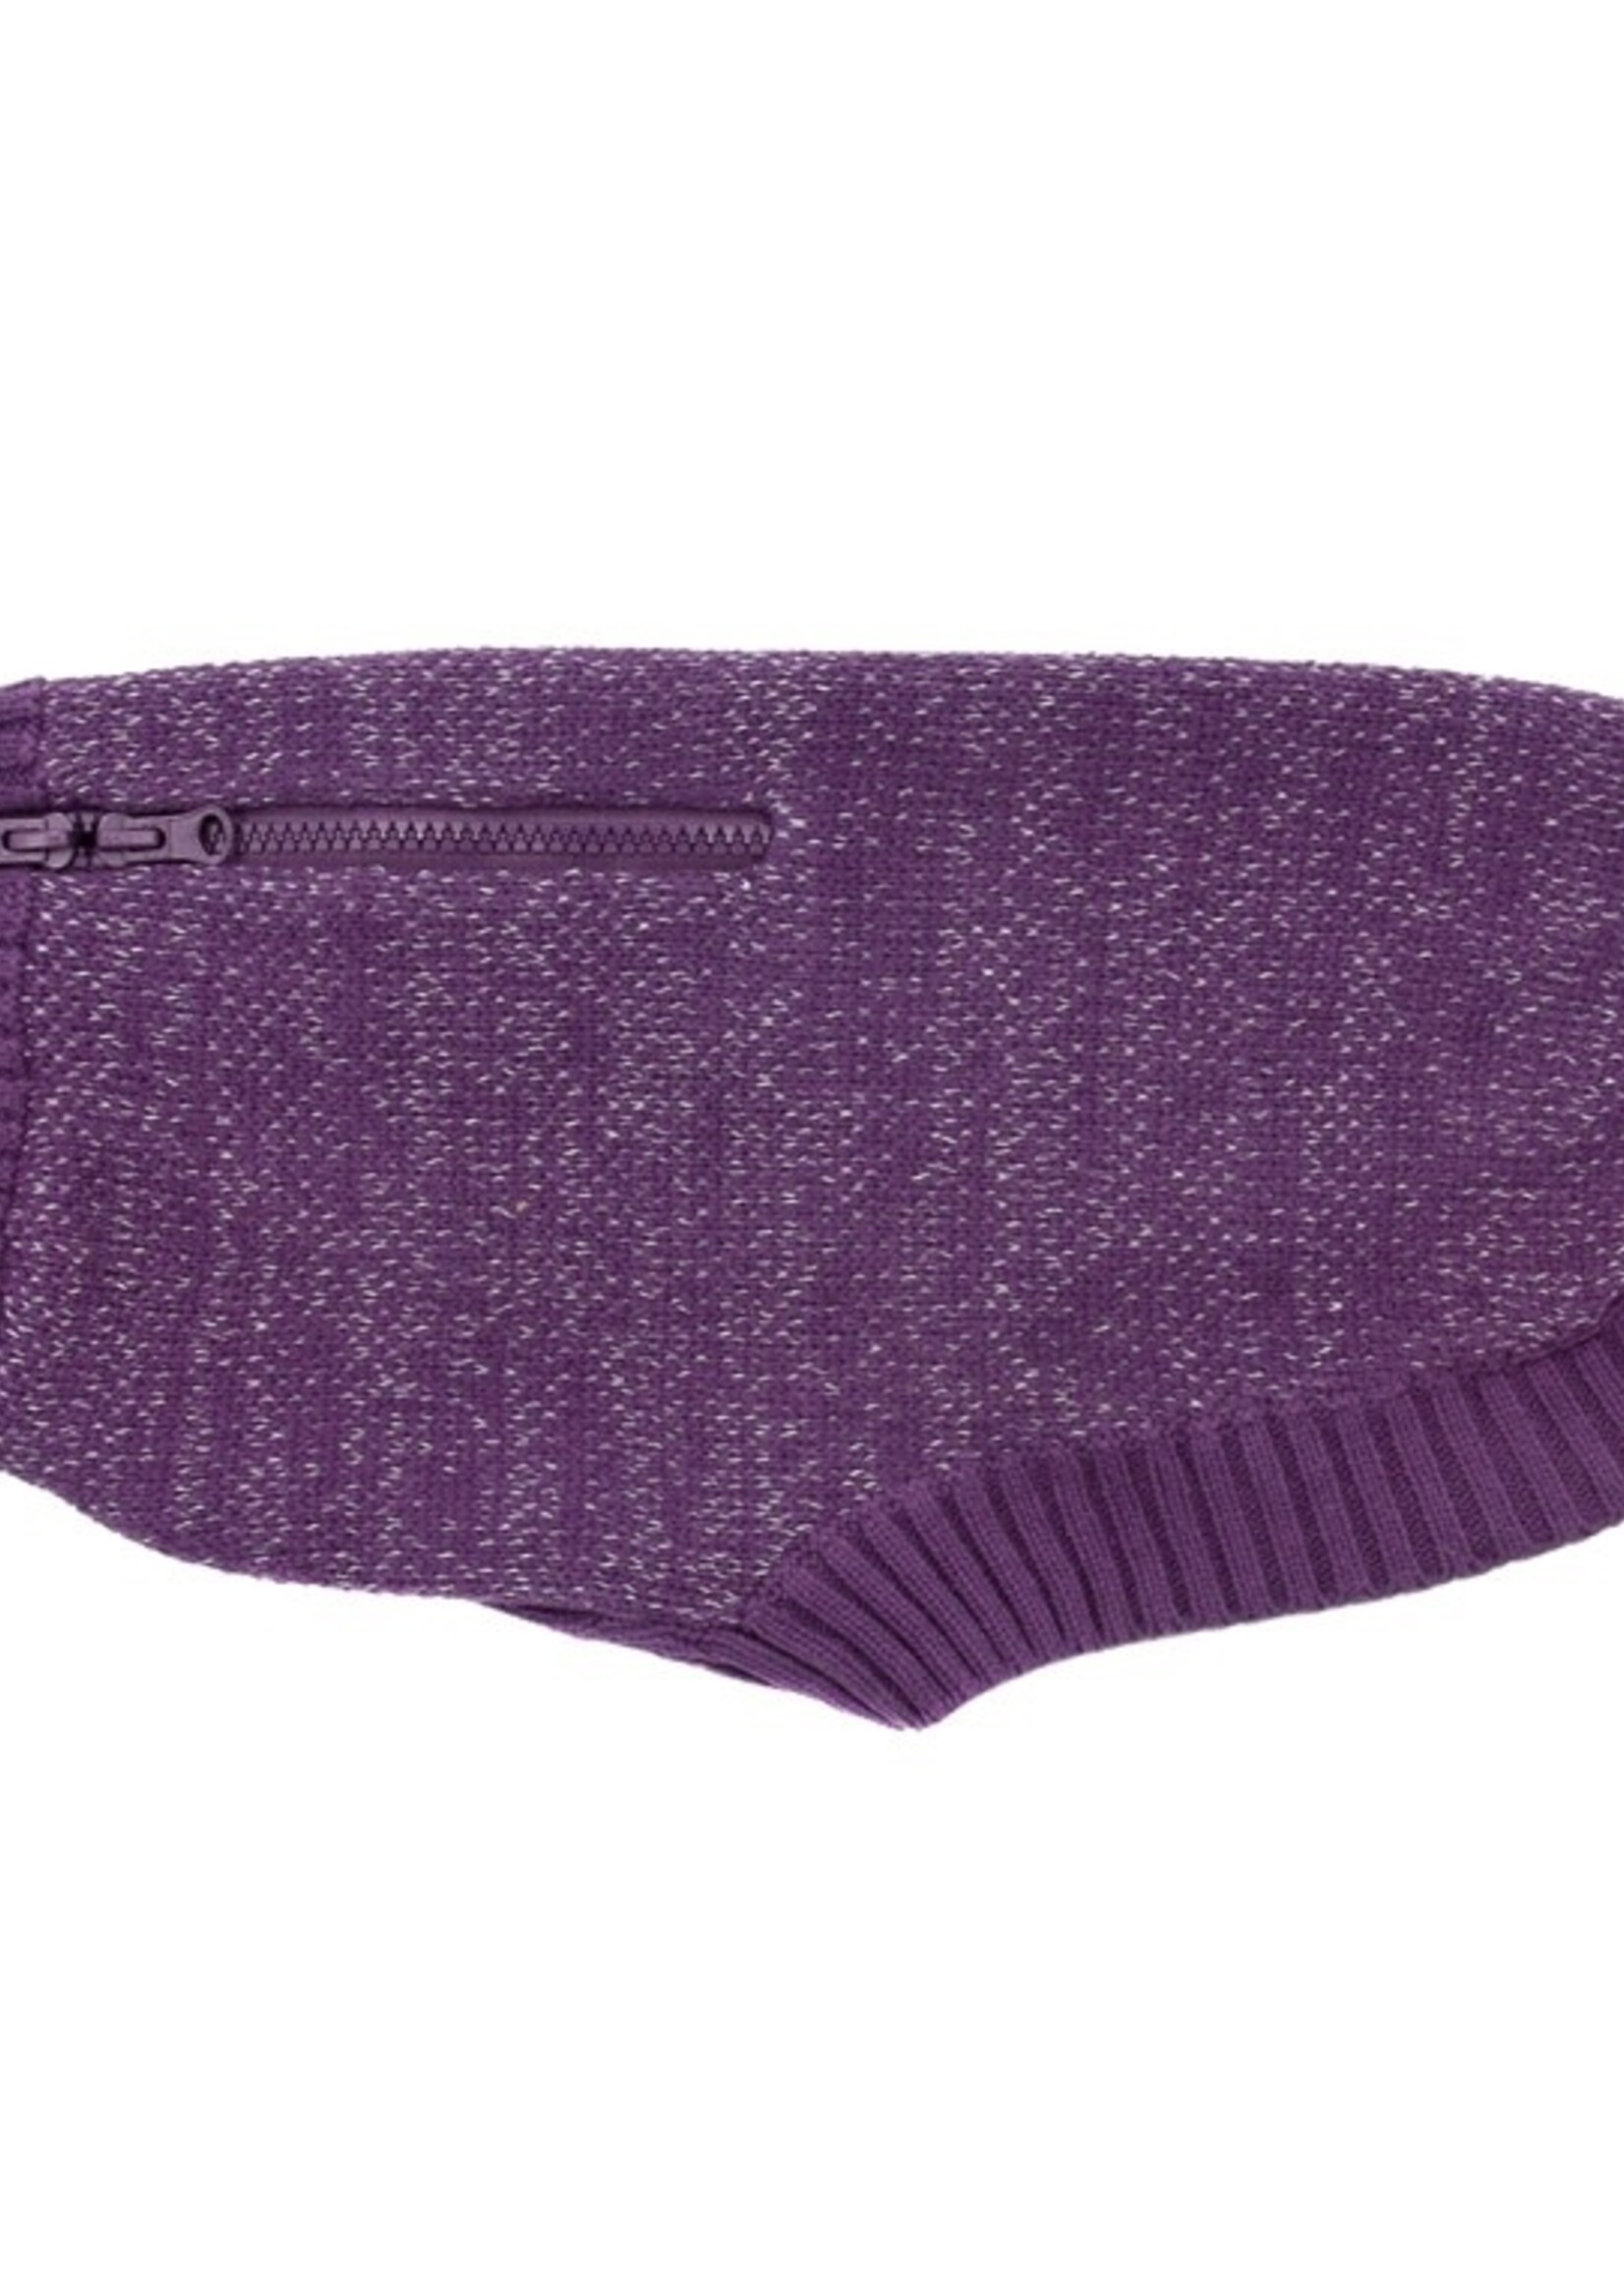 RC Pets Polaris Sweater XL Plum Purple